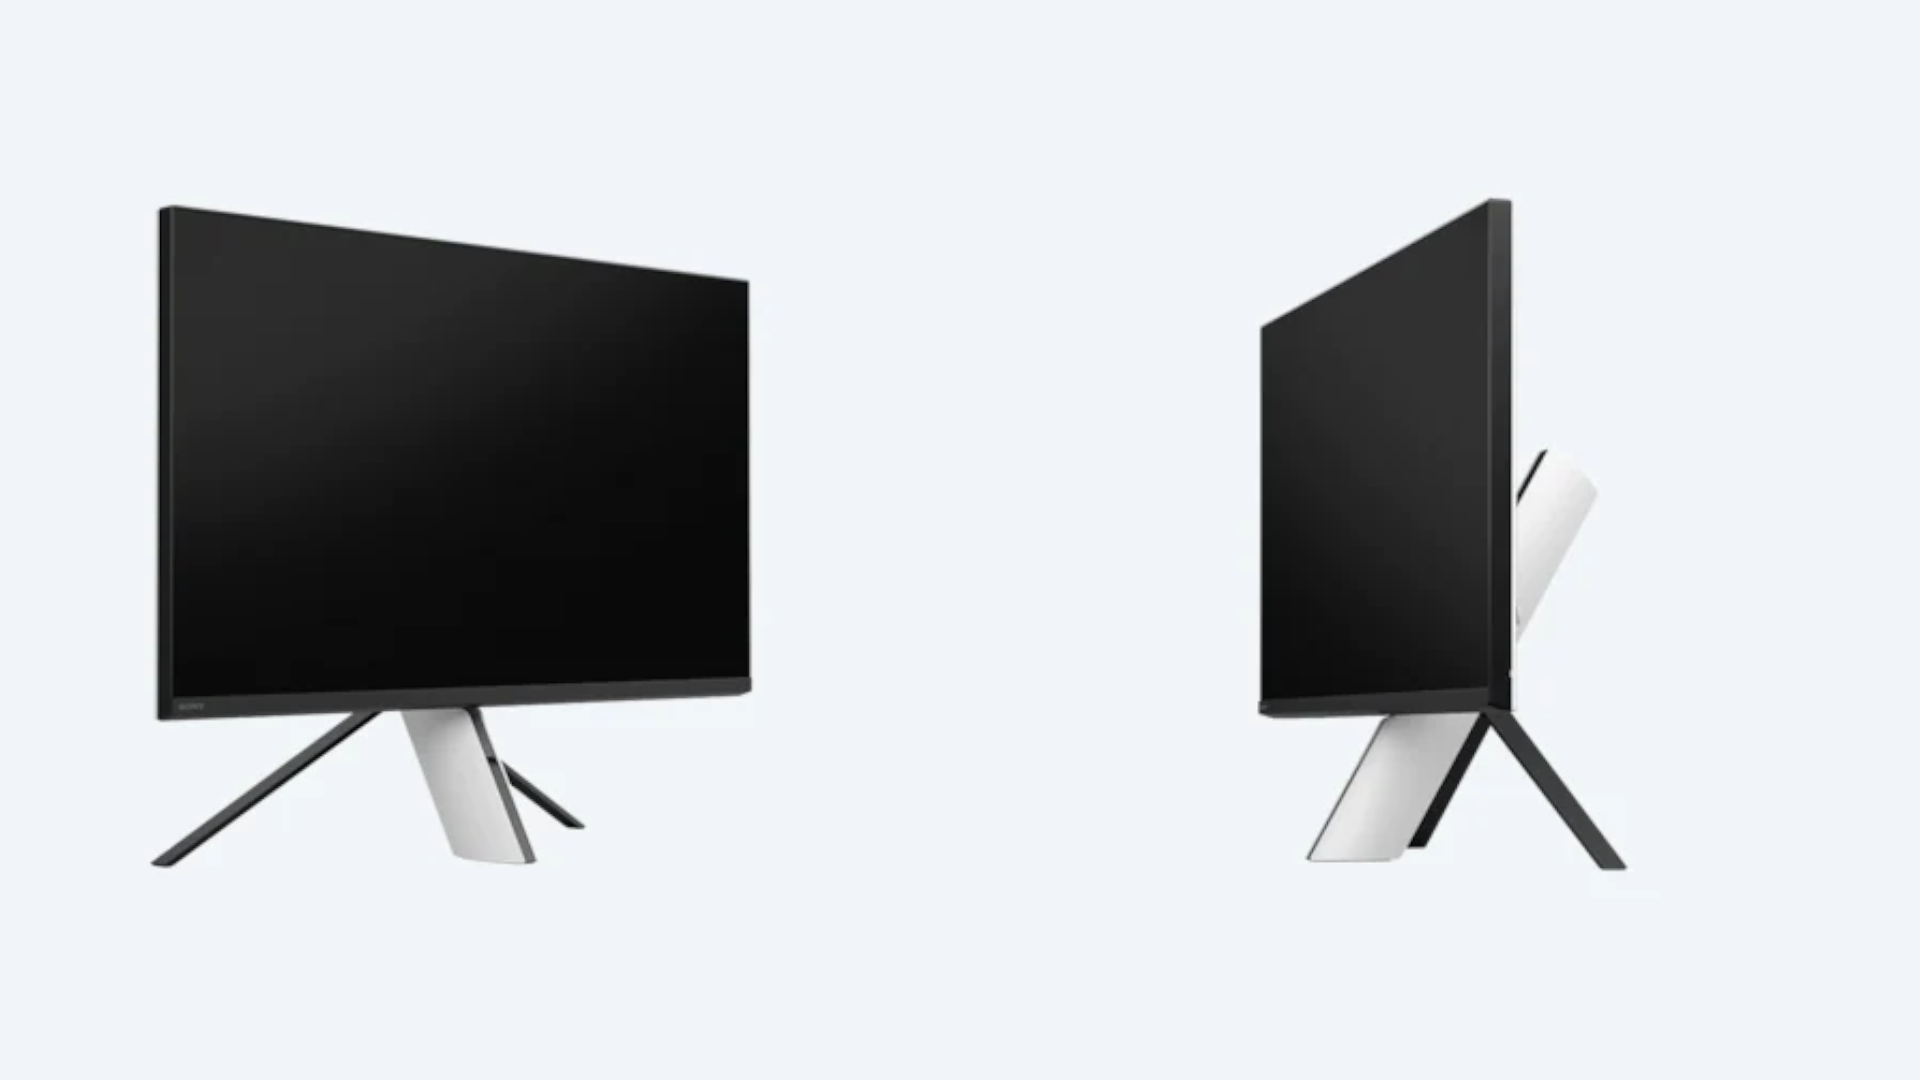 Product снимки двух черно-белых мониторов, обращенных внутрь друг к другу